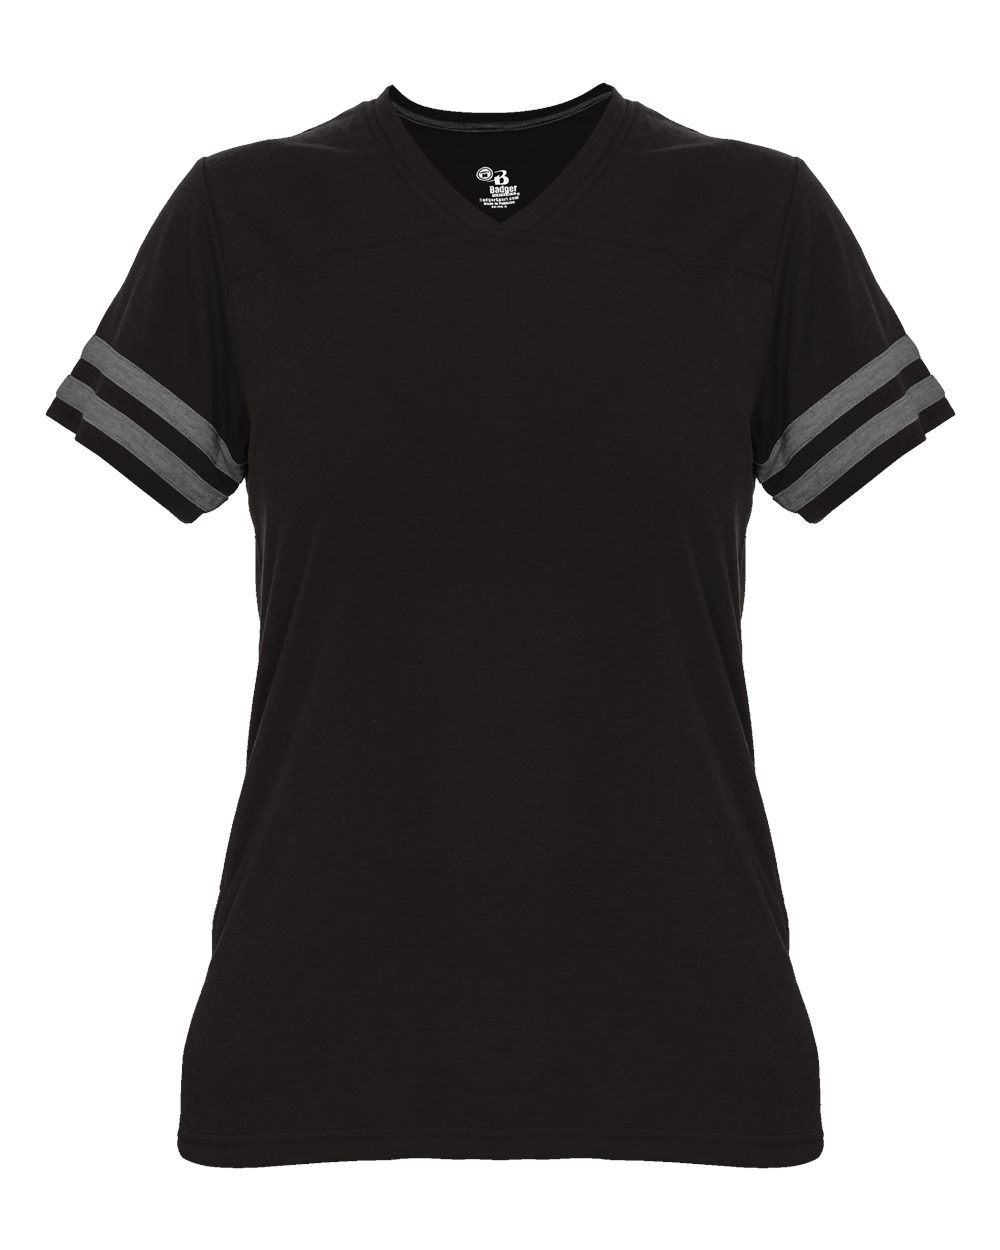 Badger Sport 4967 - Women's Tri-Blend Fan T-Shirt